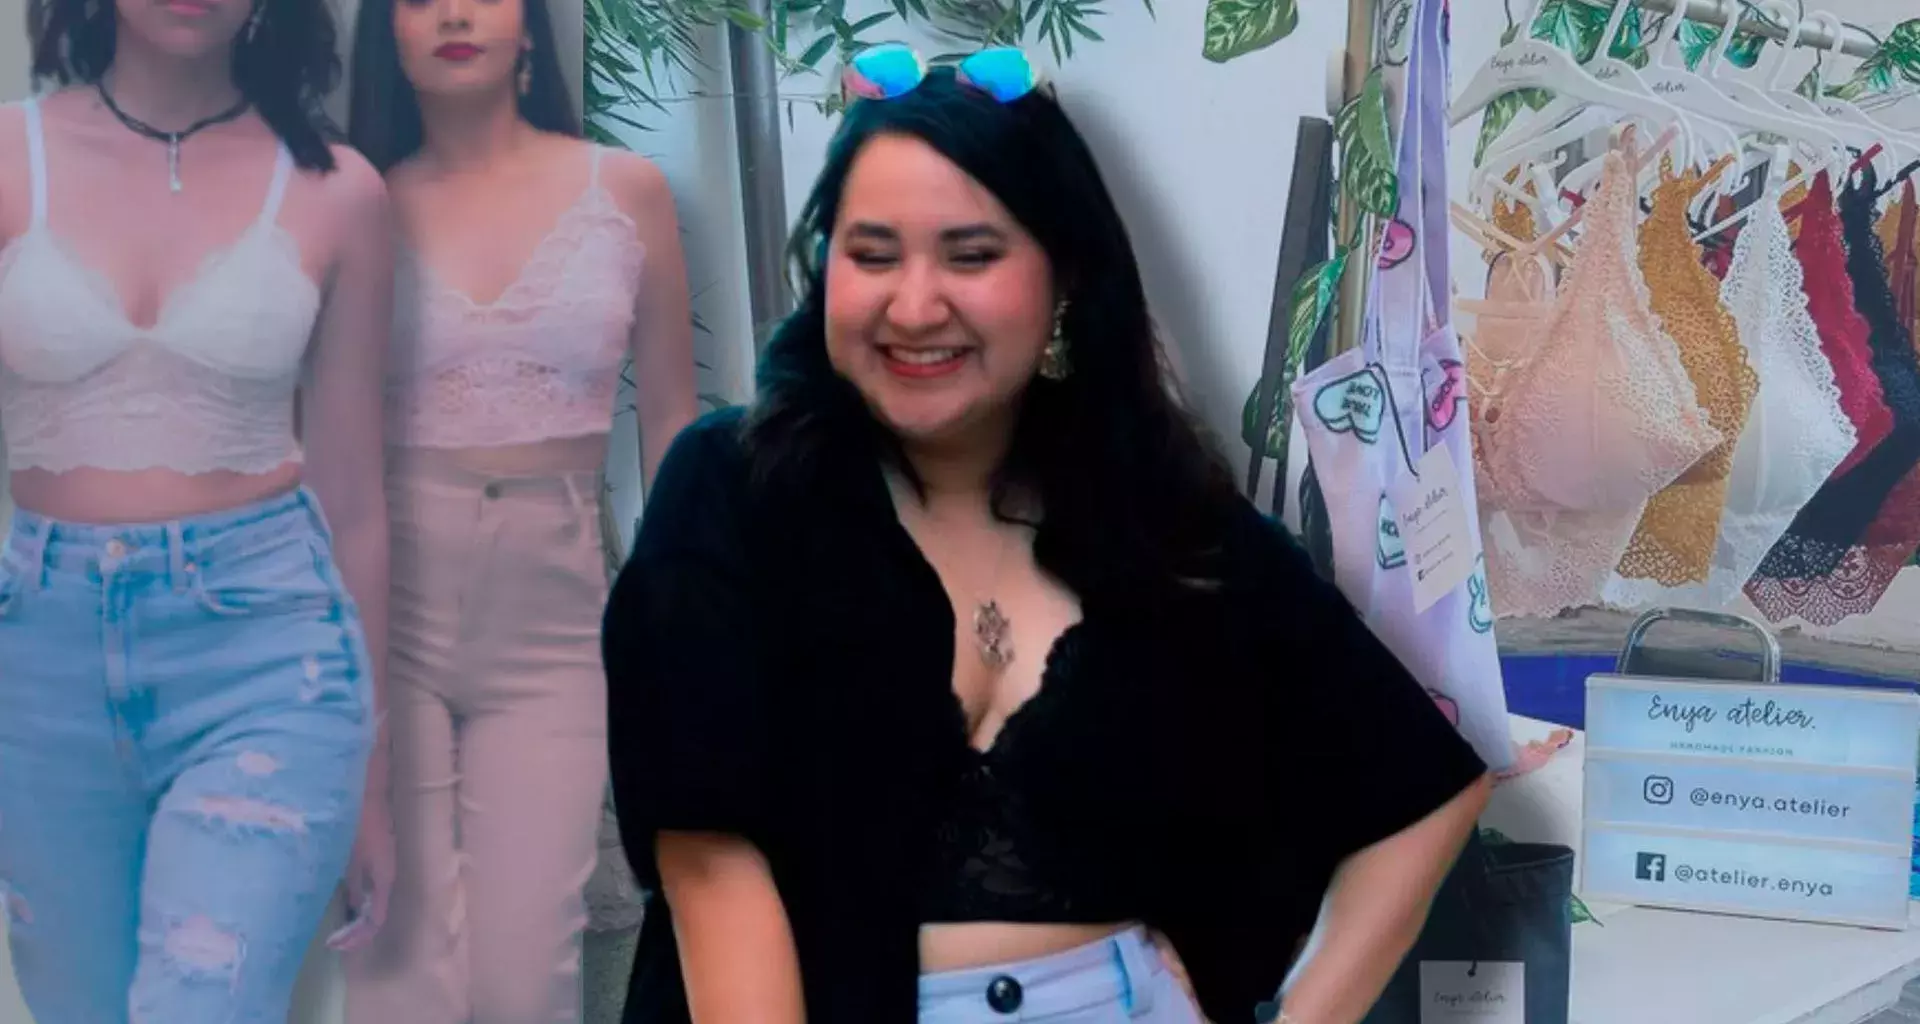 Estudiante Tec llega a Vogue Leaders México con emprendimiento en moda sustentable